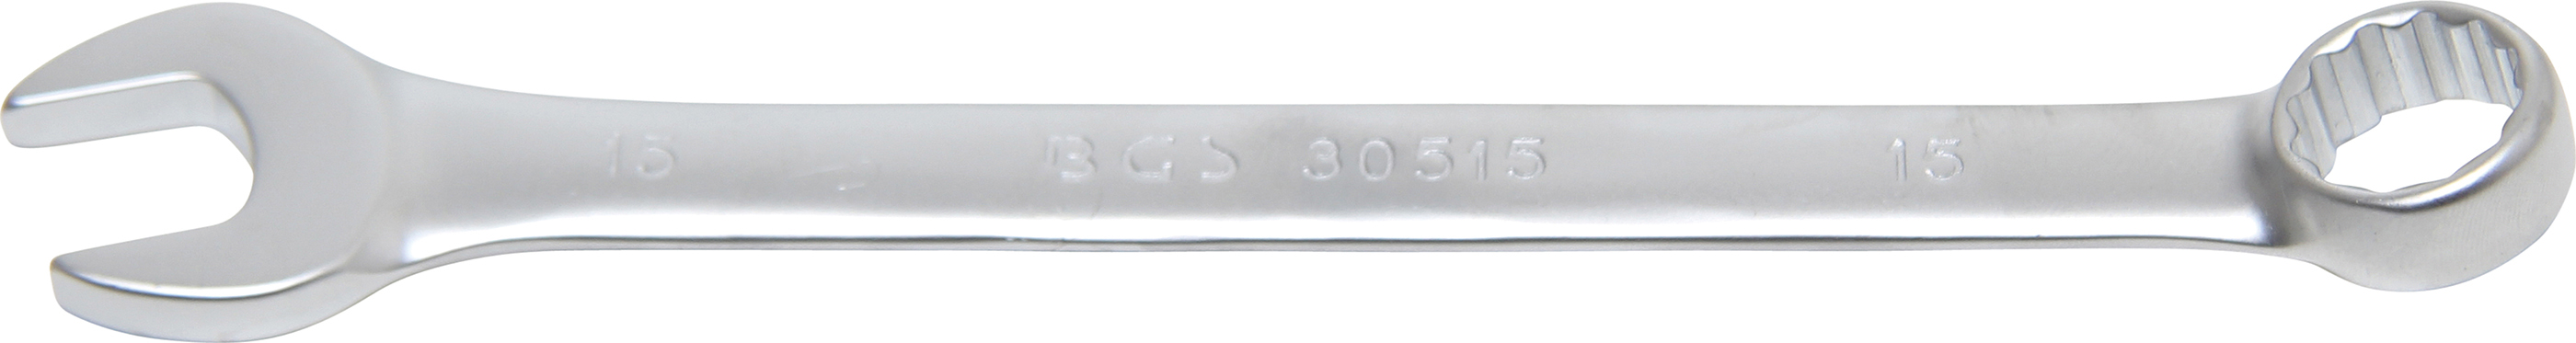 BGS 30515 Cheie combinata, 15 mm